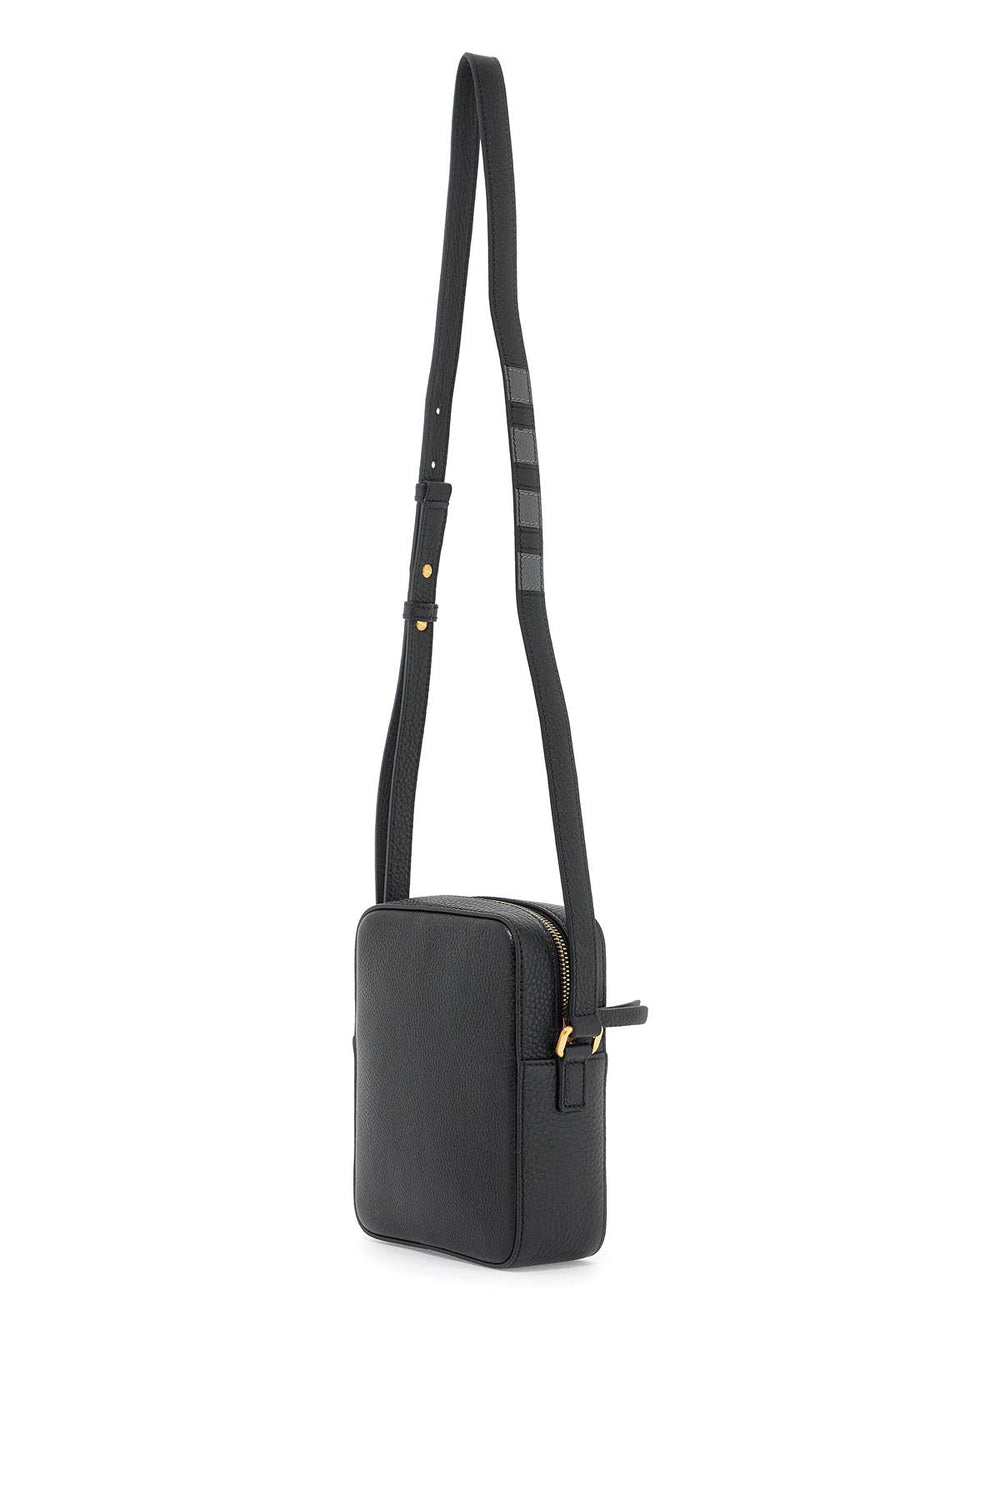 pebble grain leather vertical camera bag-1